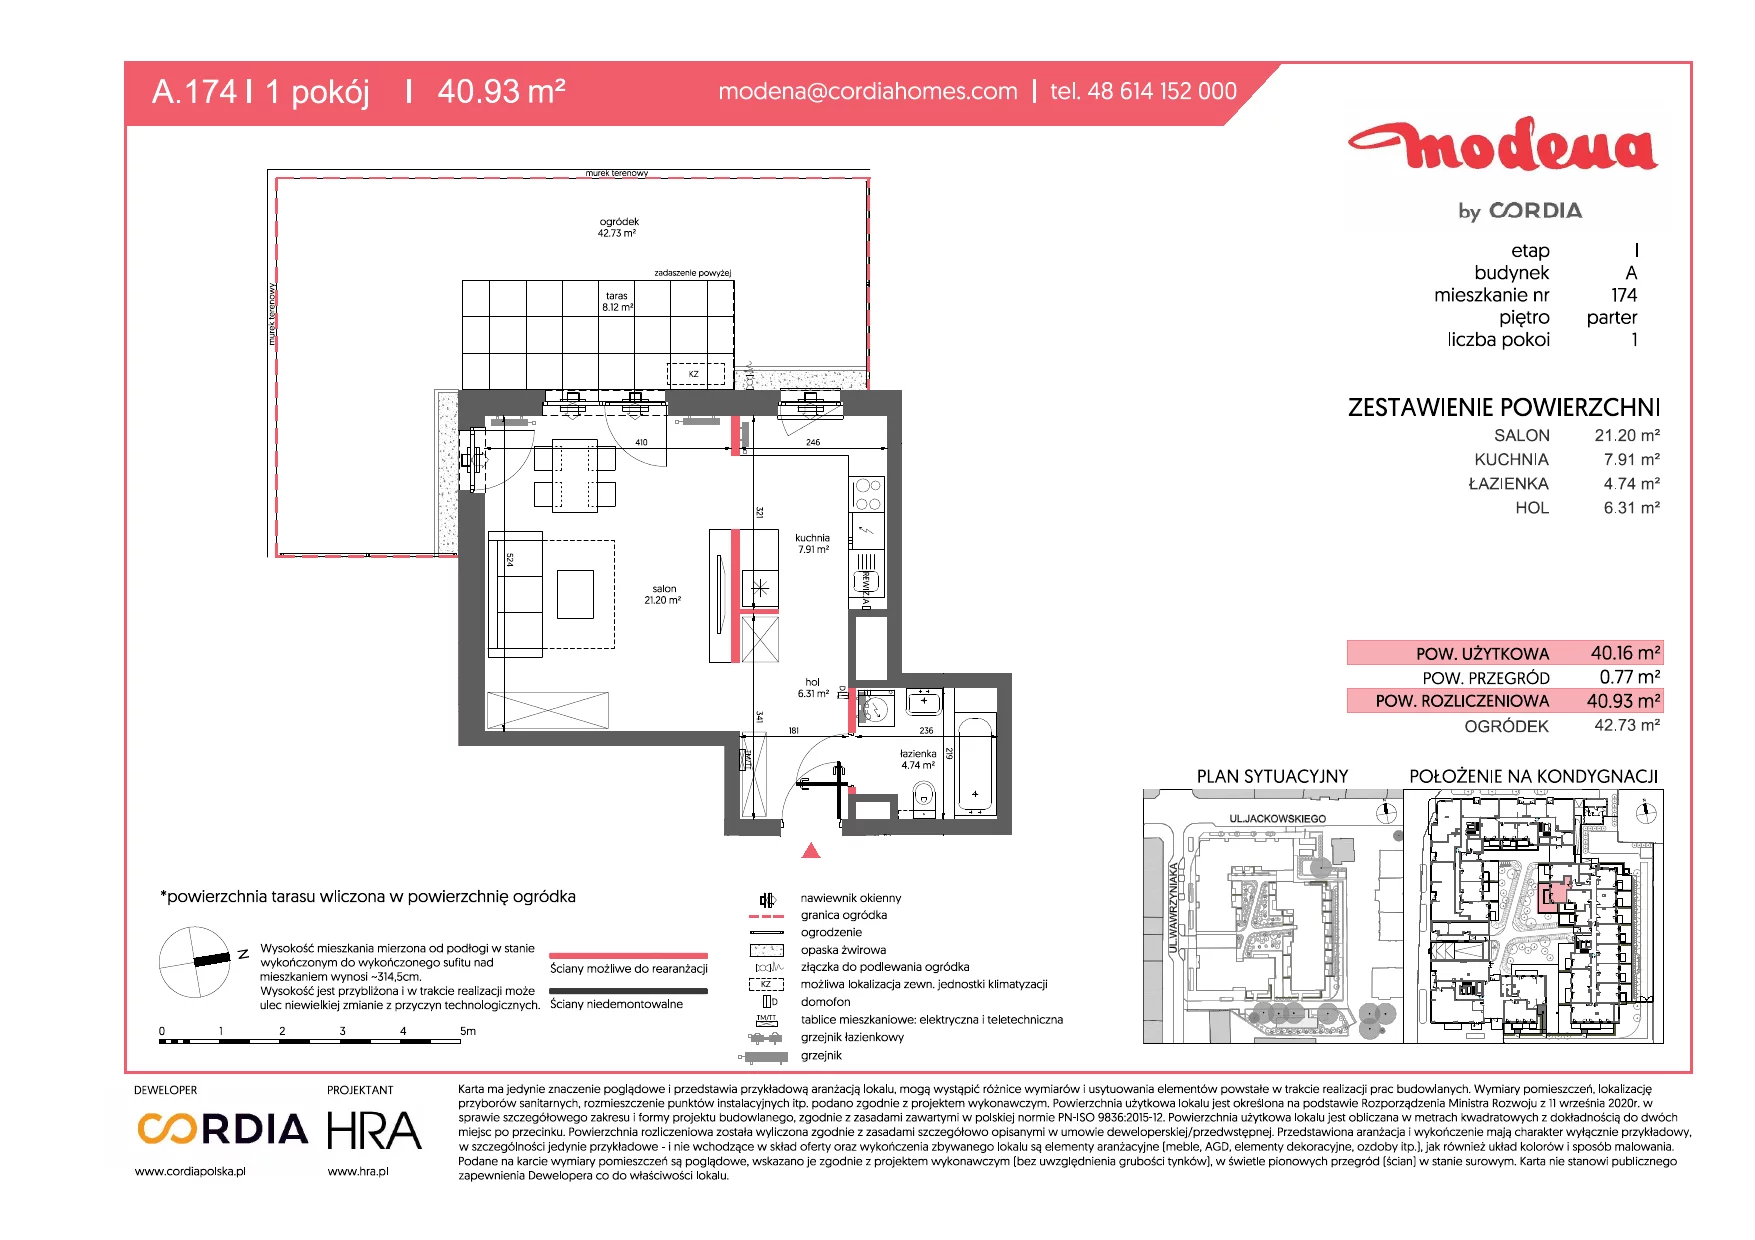 Mieszkanie 40,93 m², parter, oferta nr A.174, Modena, Poznań, Jeżyce, Jeżyce, ul. Jackowskiego 24